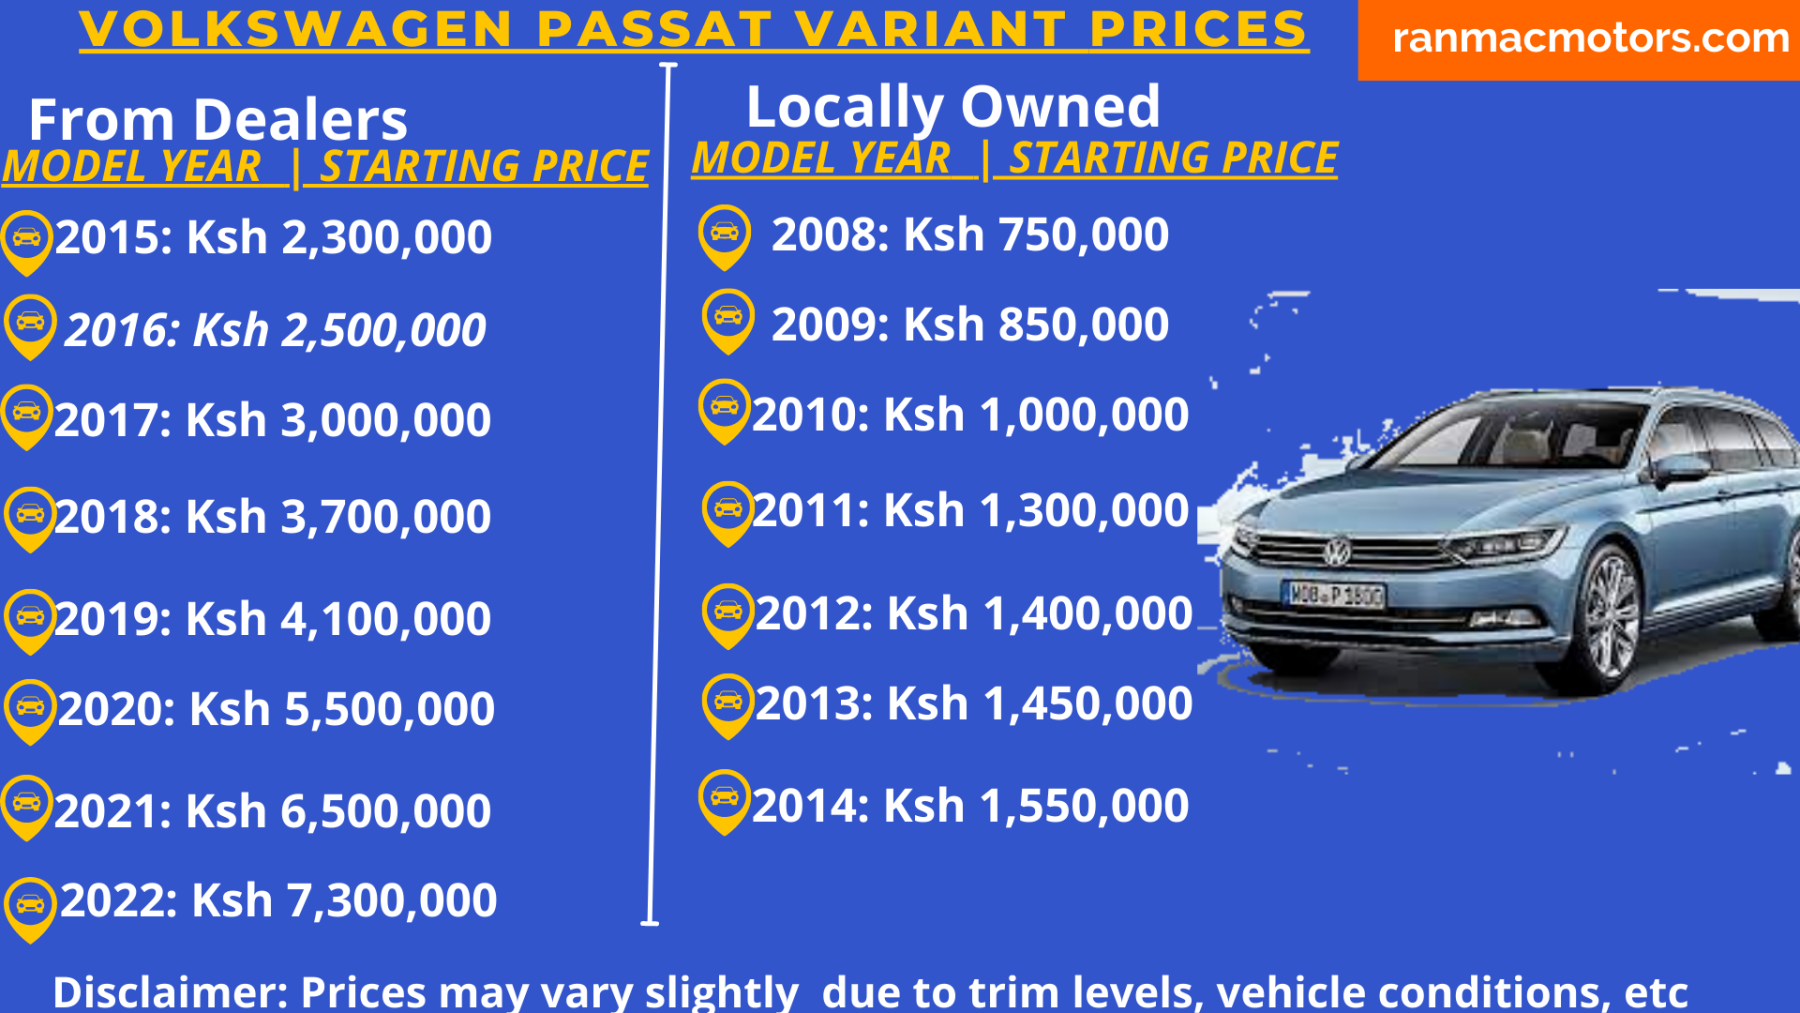 verhaal Fluisteren Proportioneel Price of Volkswagen Passat Variant in Kenya, Specs, Review - RanMac Motors